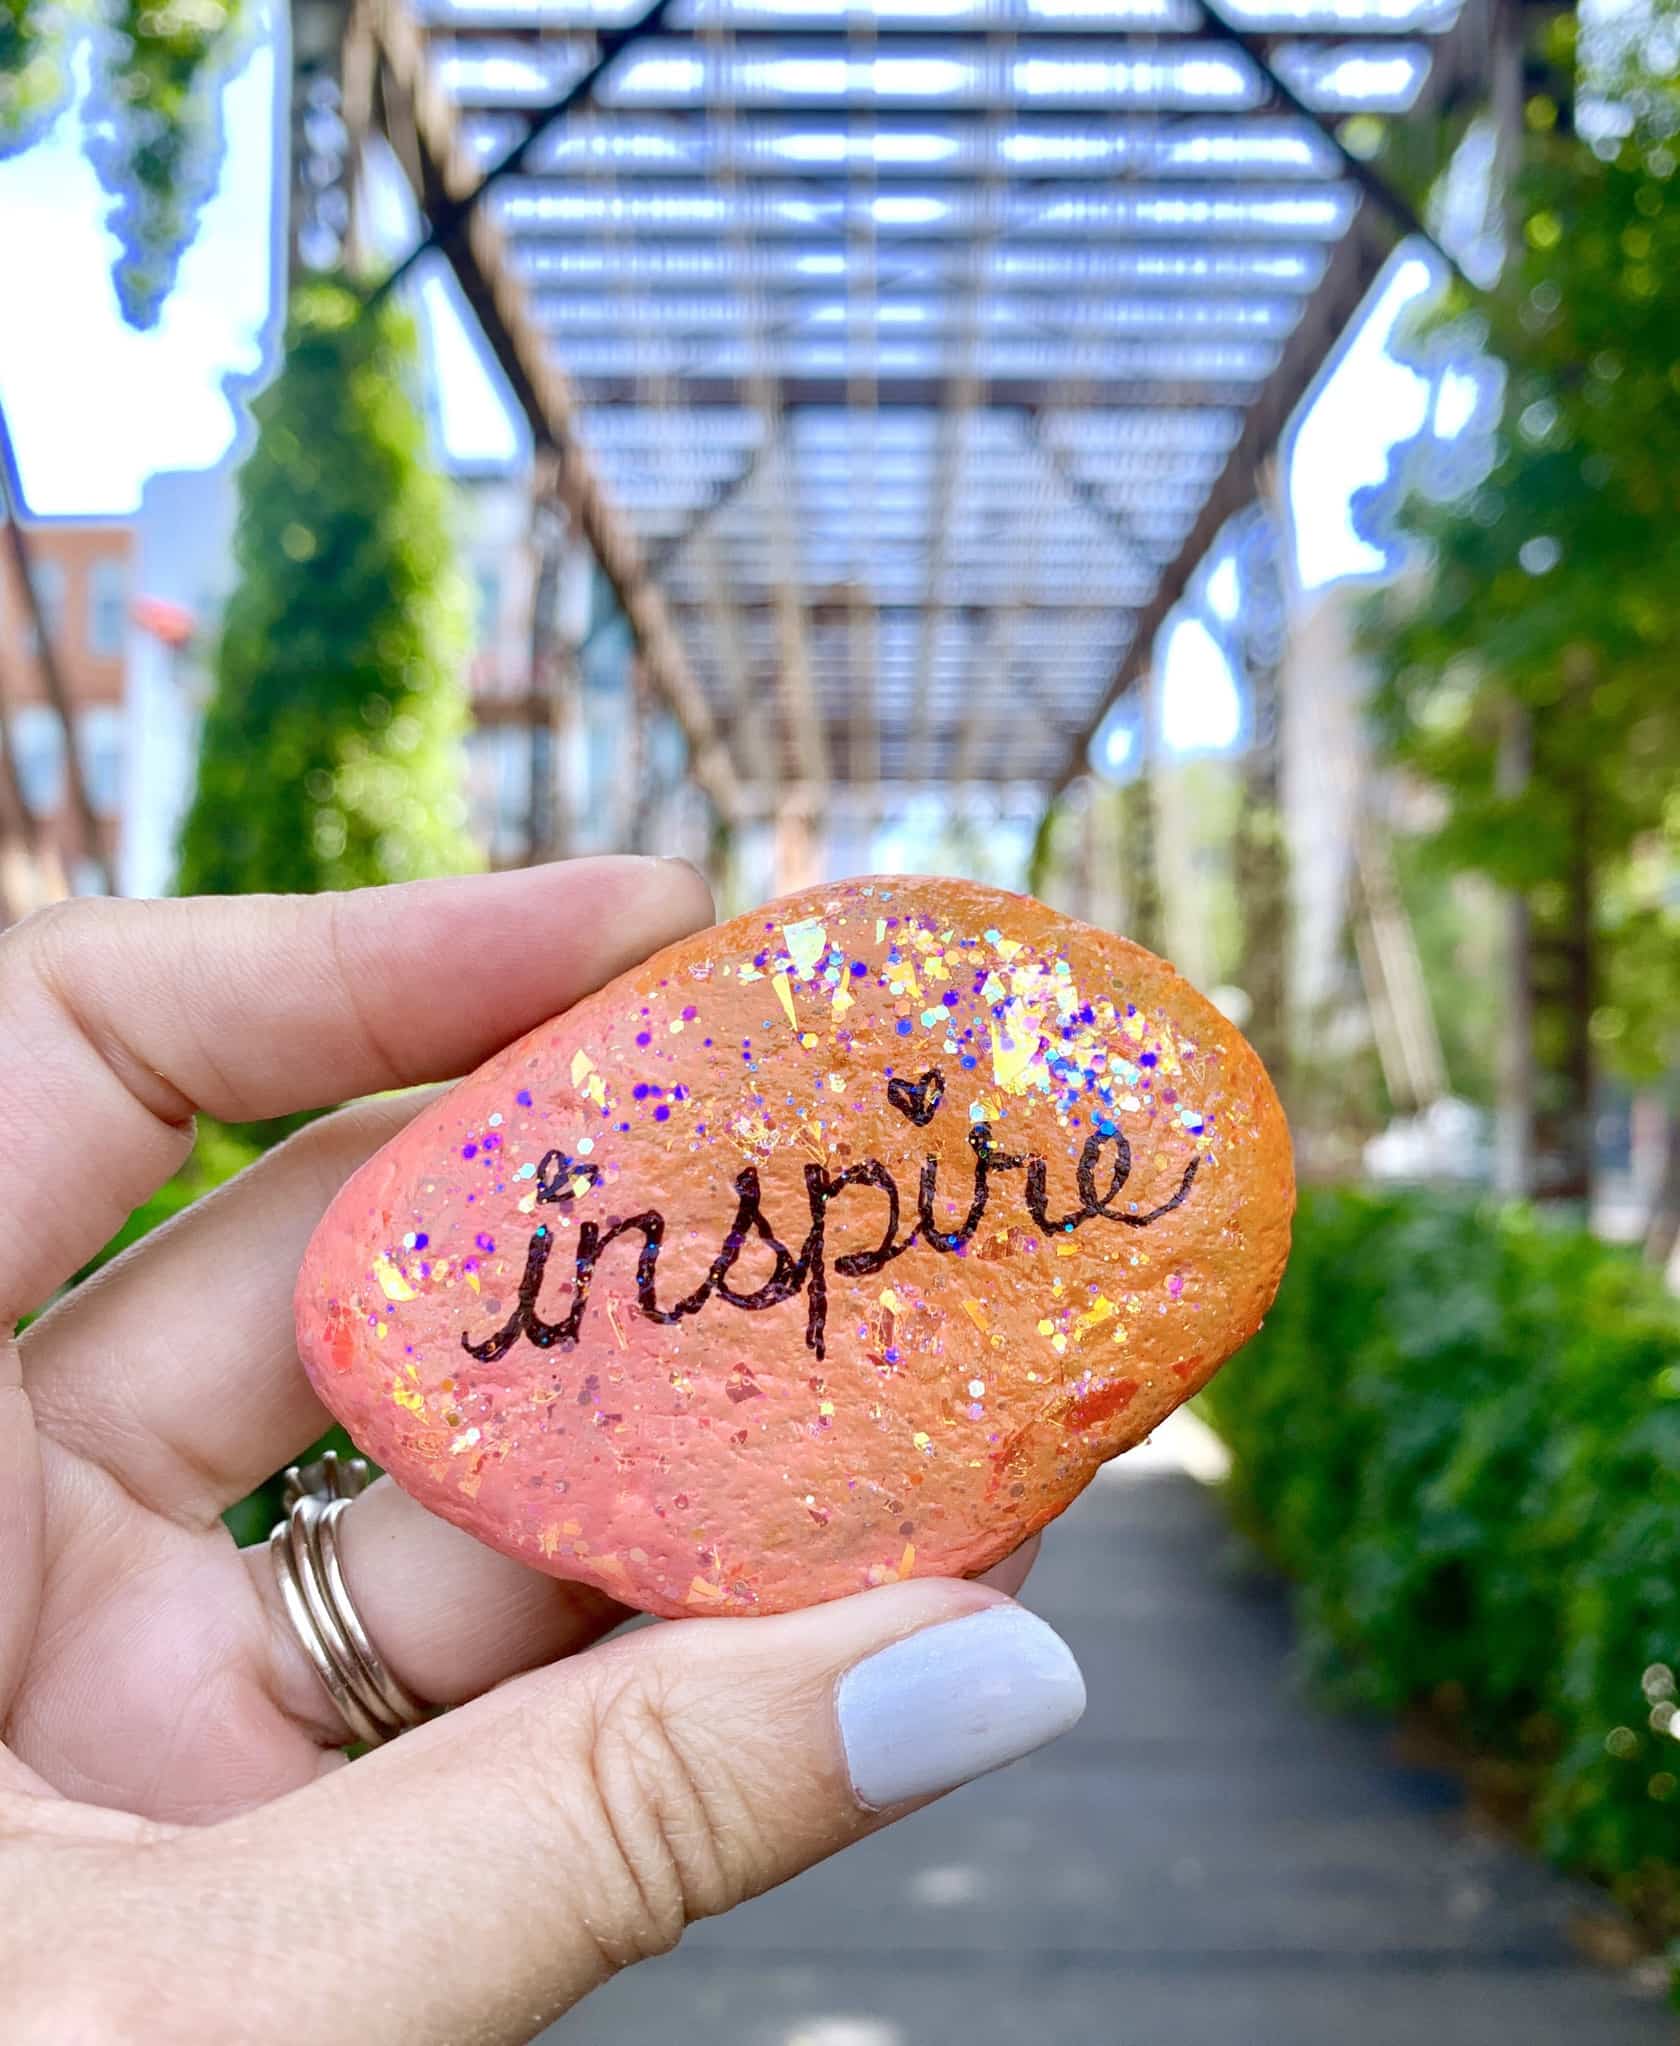  Inspire - glitter word art painted rock by Jen Goode